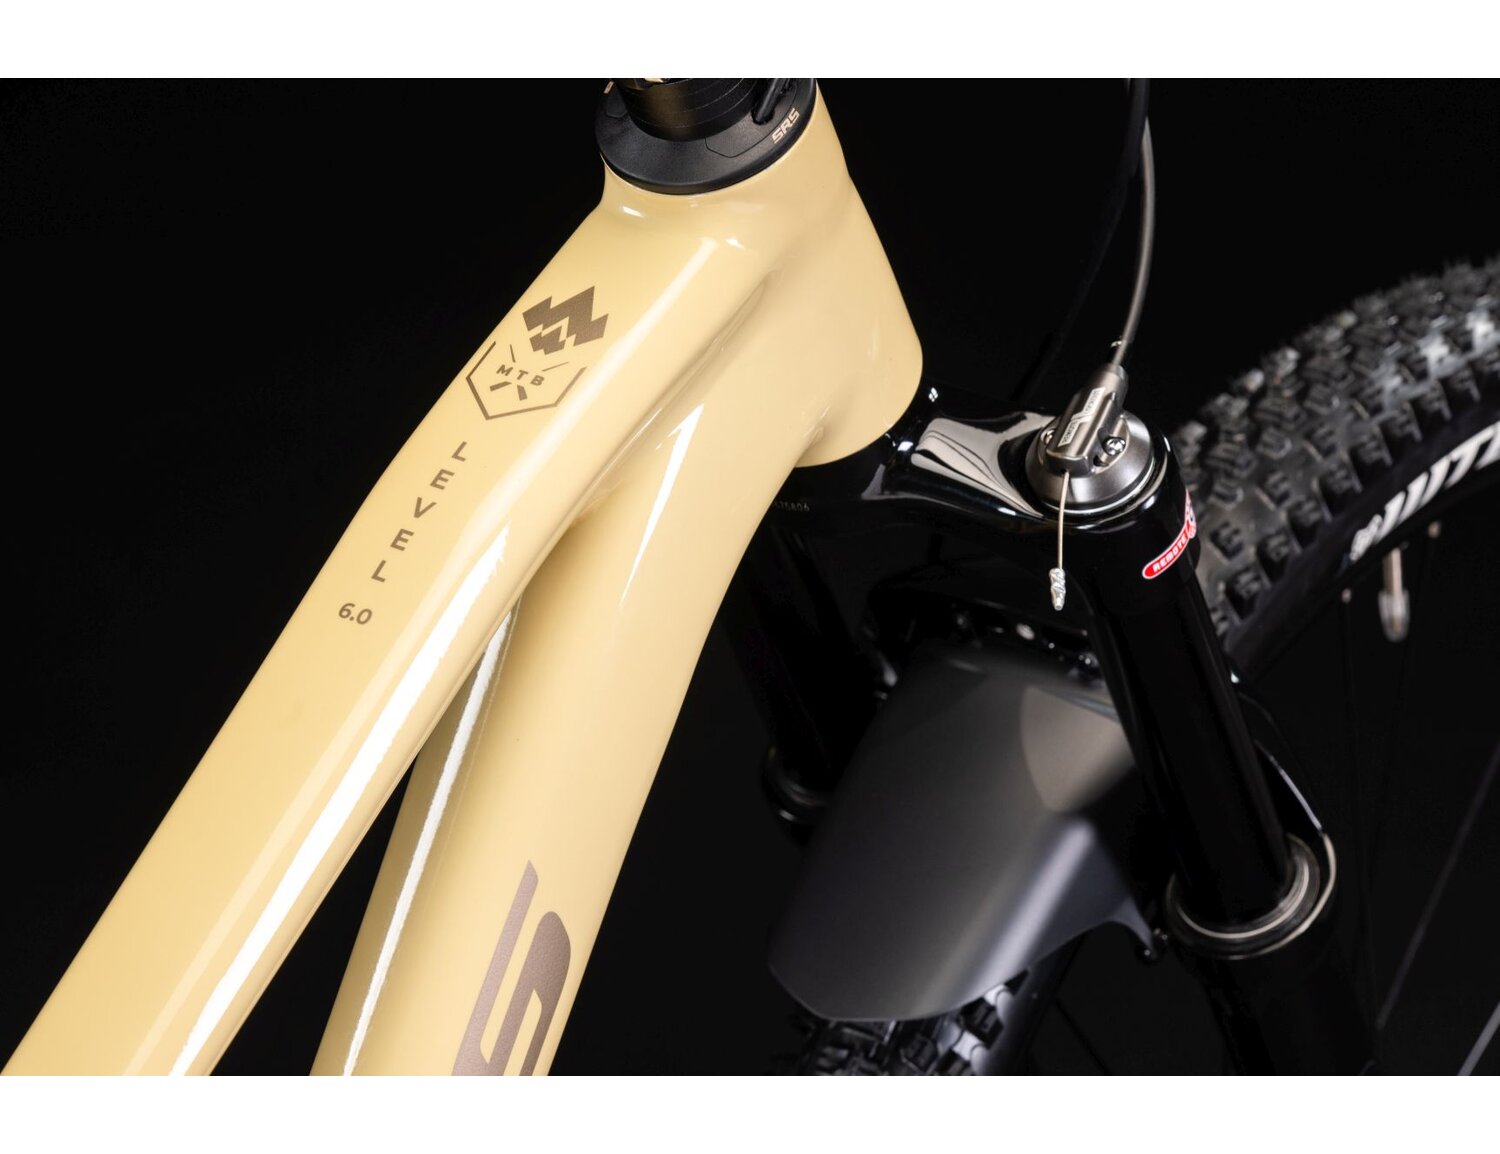  Aluminowa rama oraz zbliżenie na nazwę w rowerze górskim damskim MTB Woman XC KROSS Level 6.0 